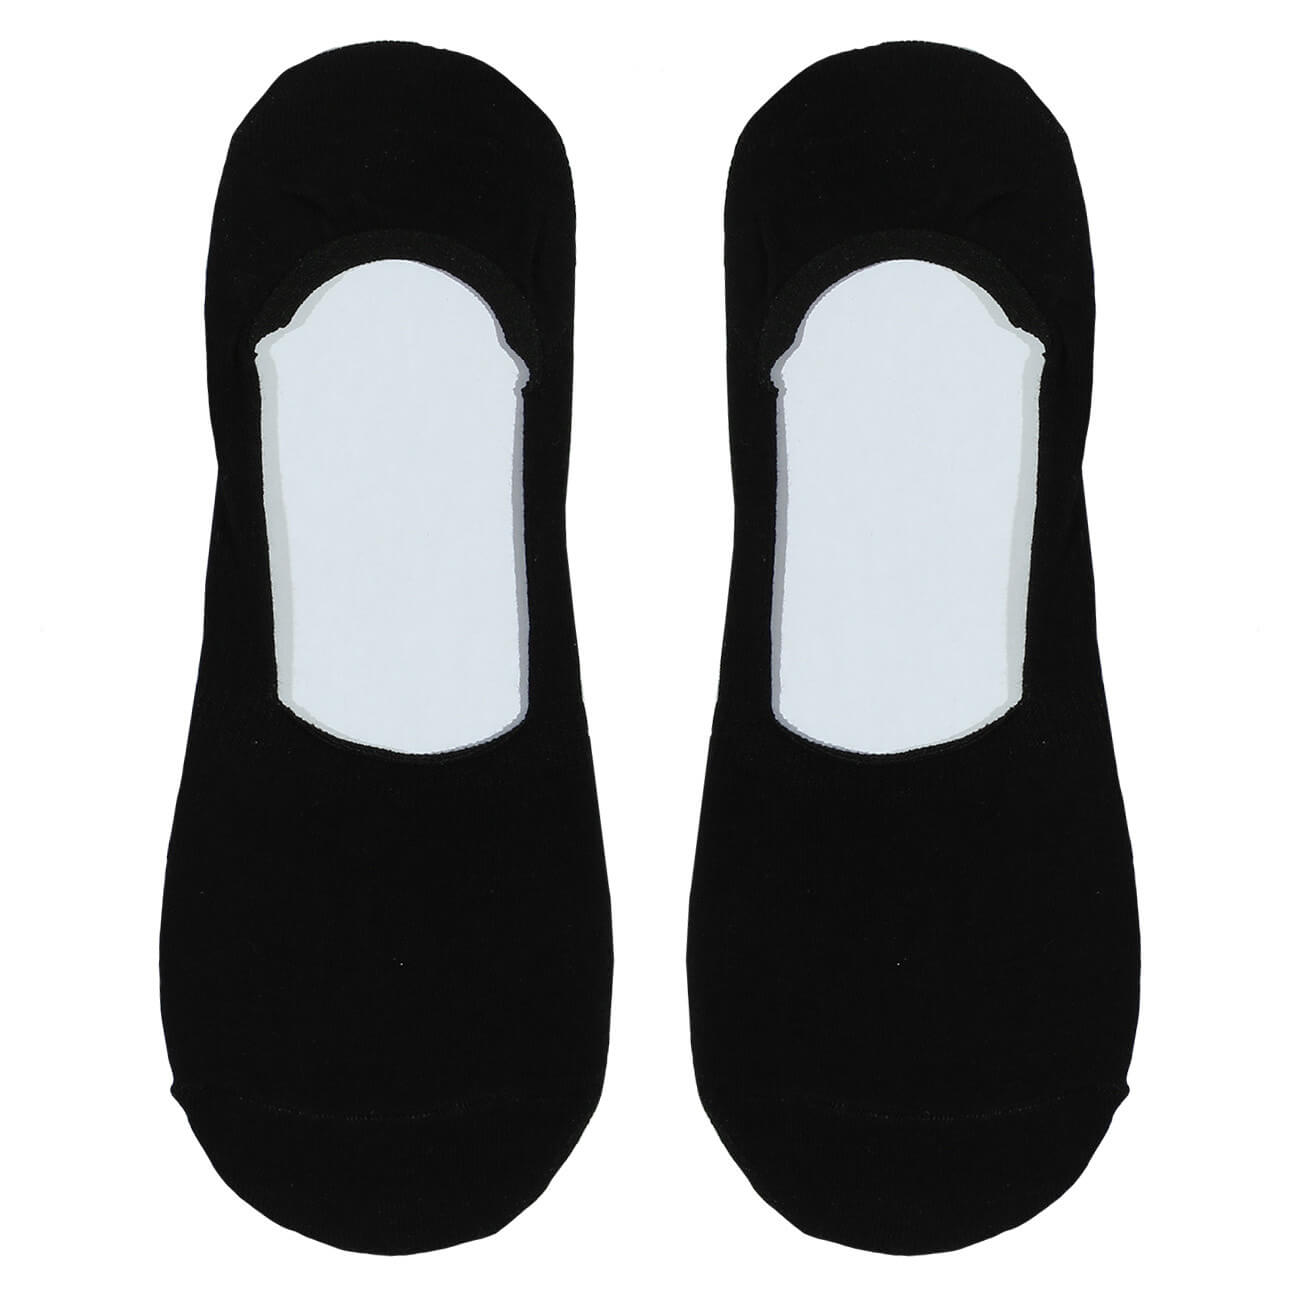 Носки-следки женские, р. 36-38, хлопок/полиэстер, черные, Basic носки женские миними котон укороченные р 39 41 бьянко 1201